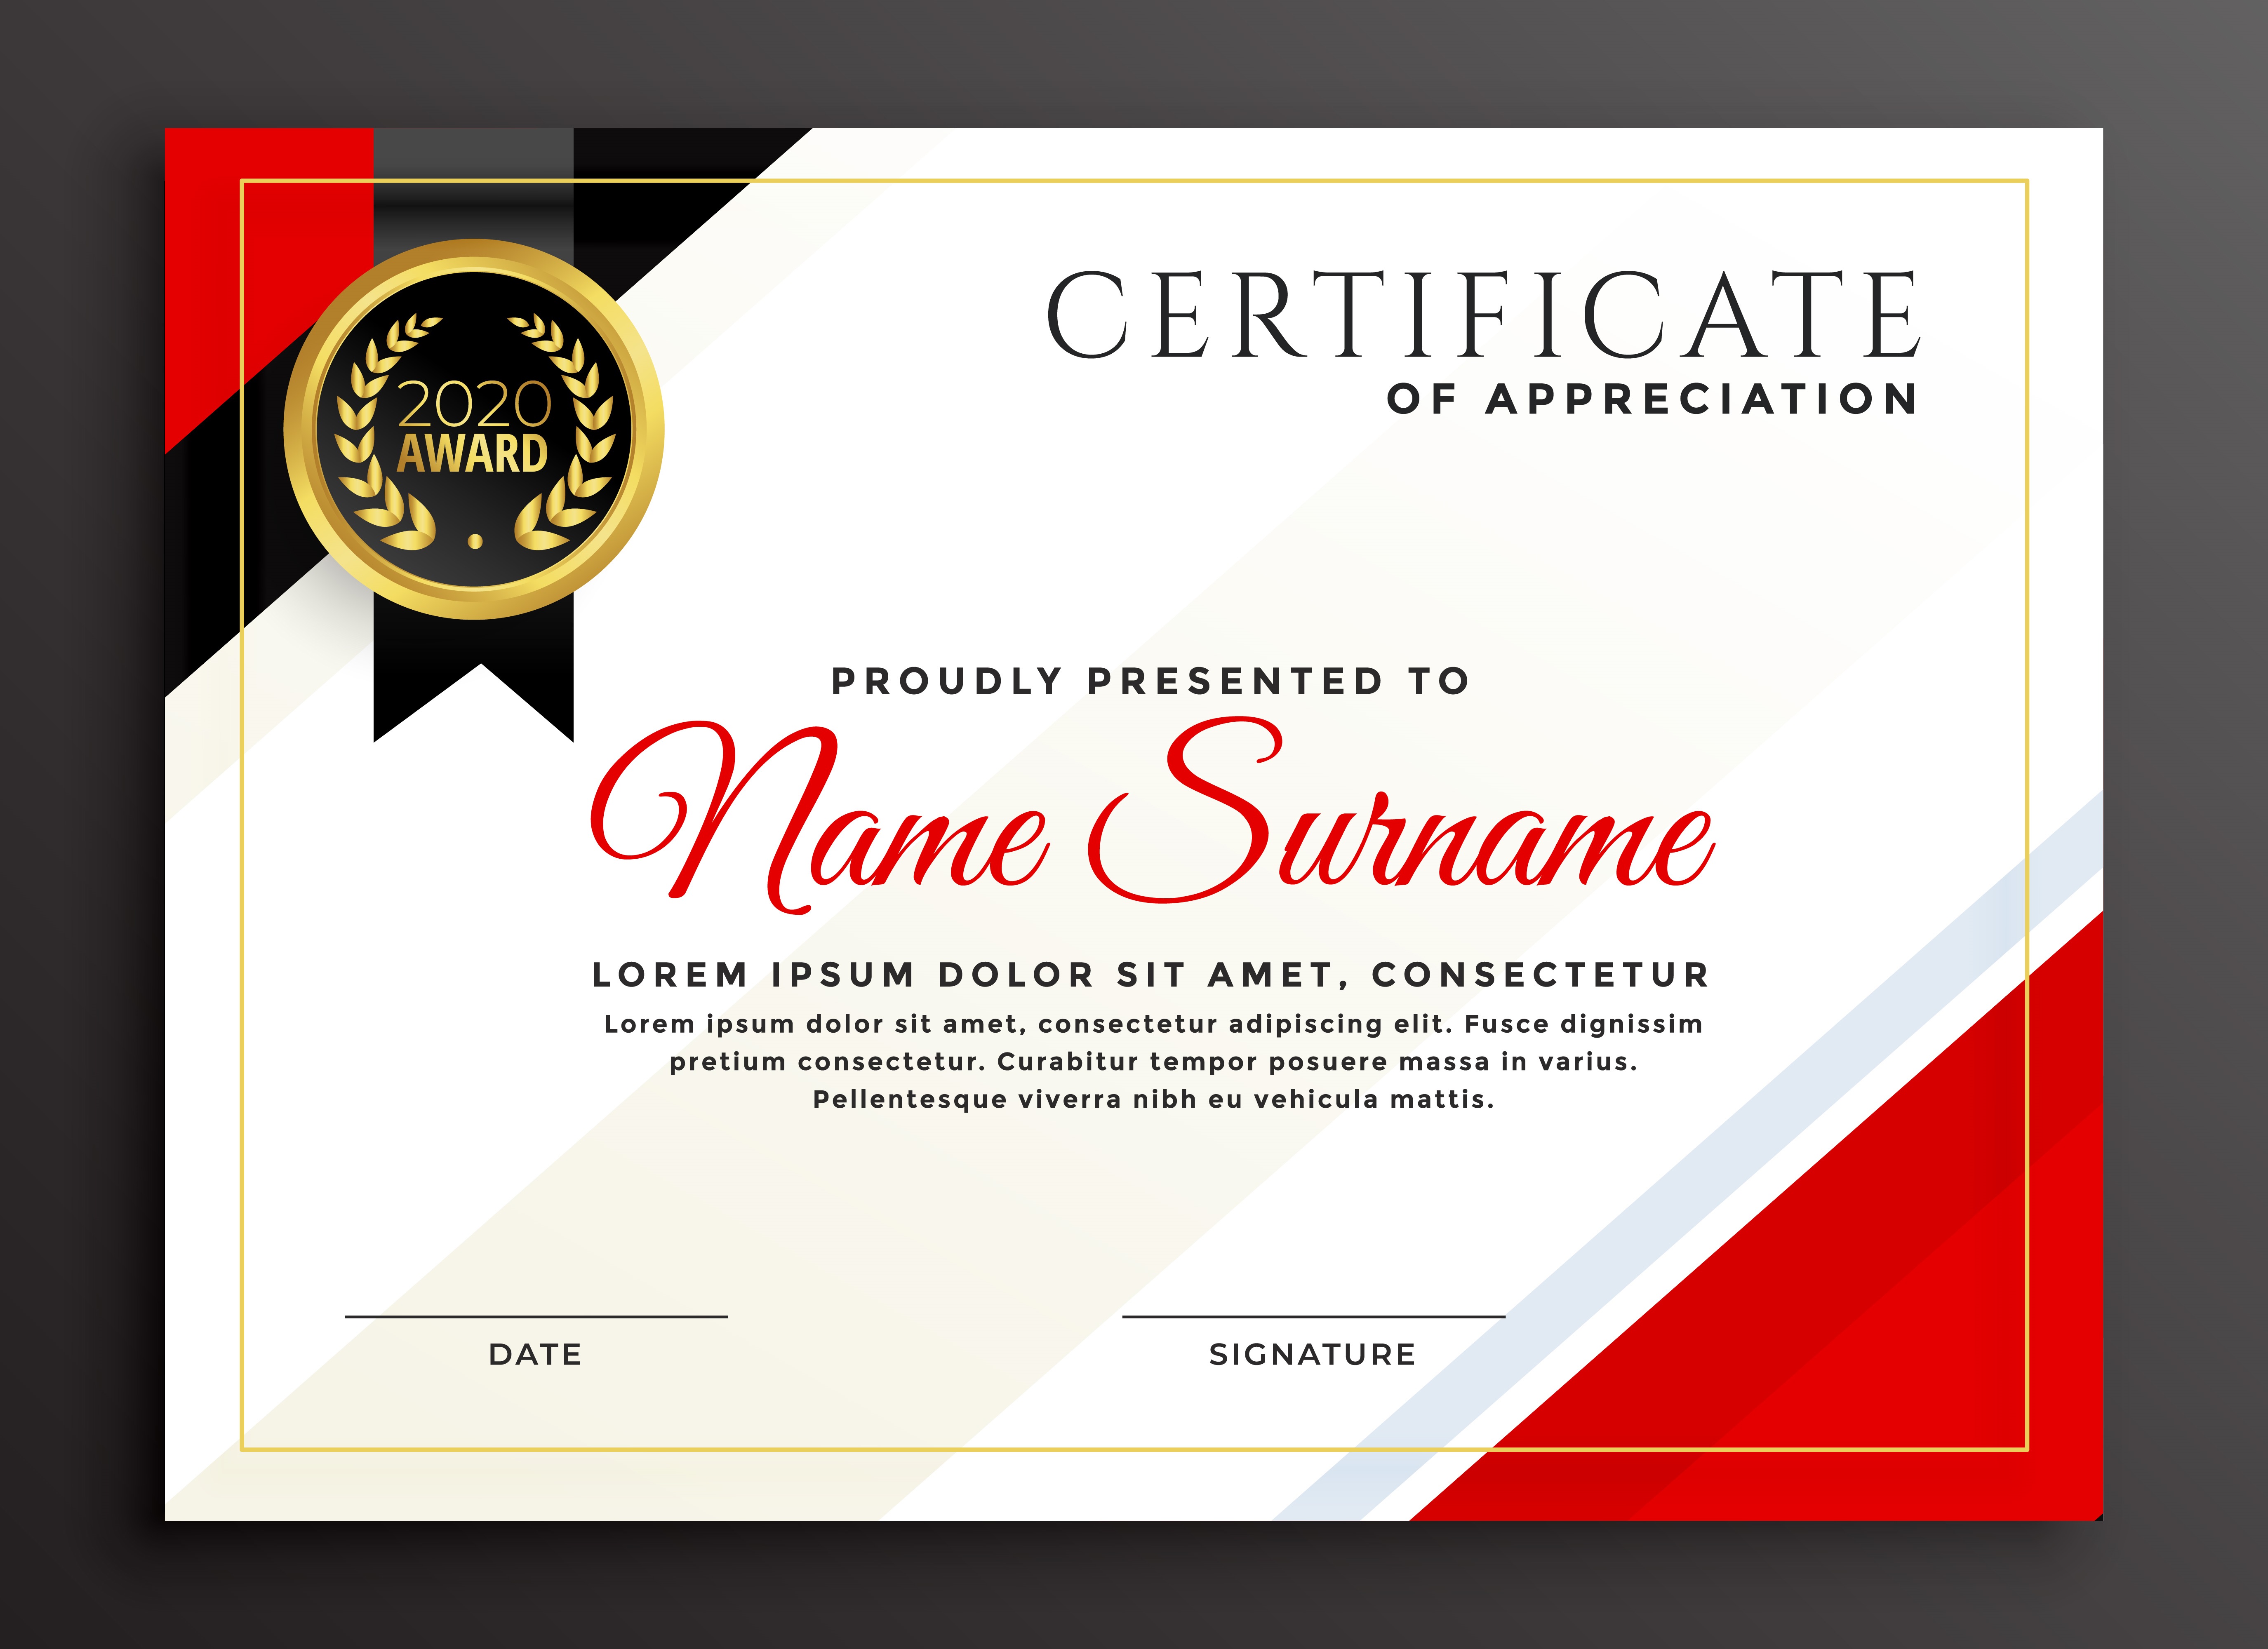 i-will-design-professional-award-certificate-certificate-appreciation